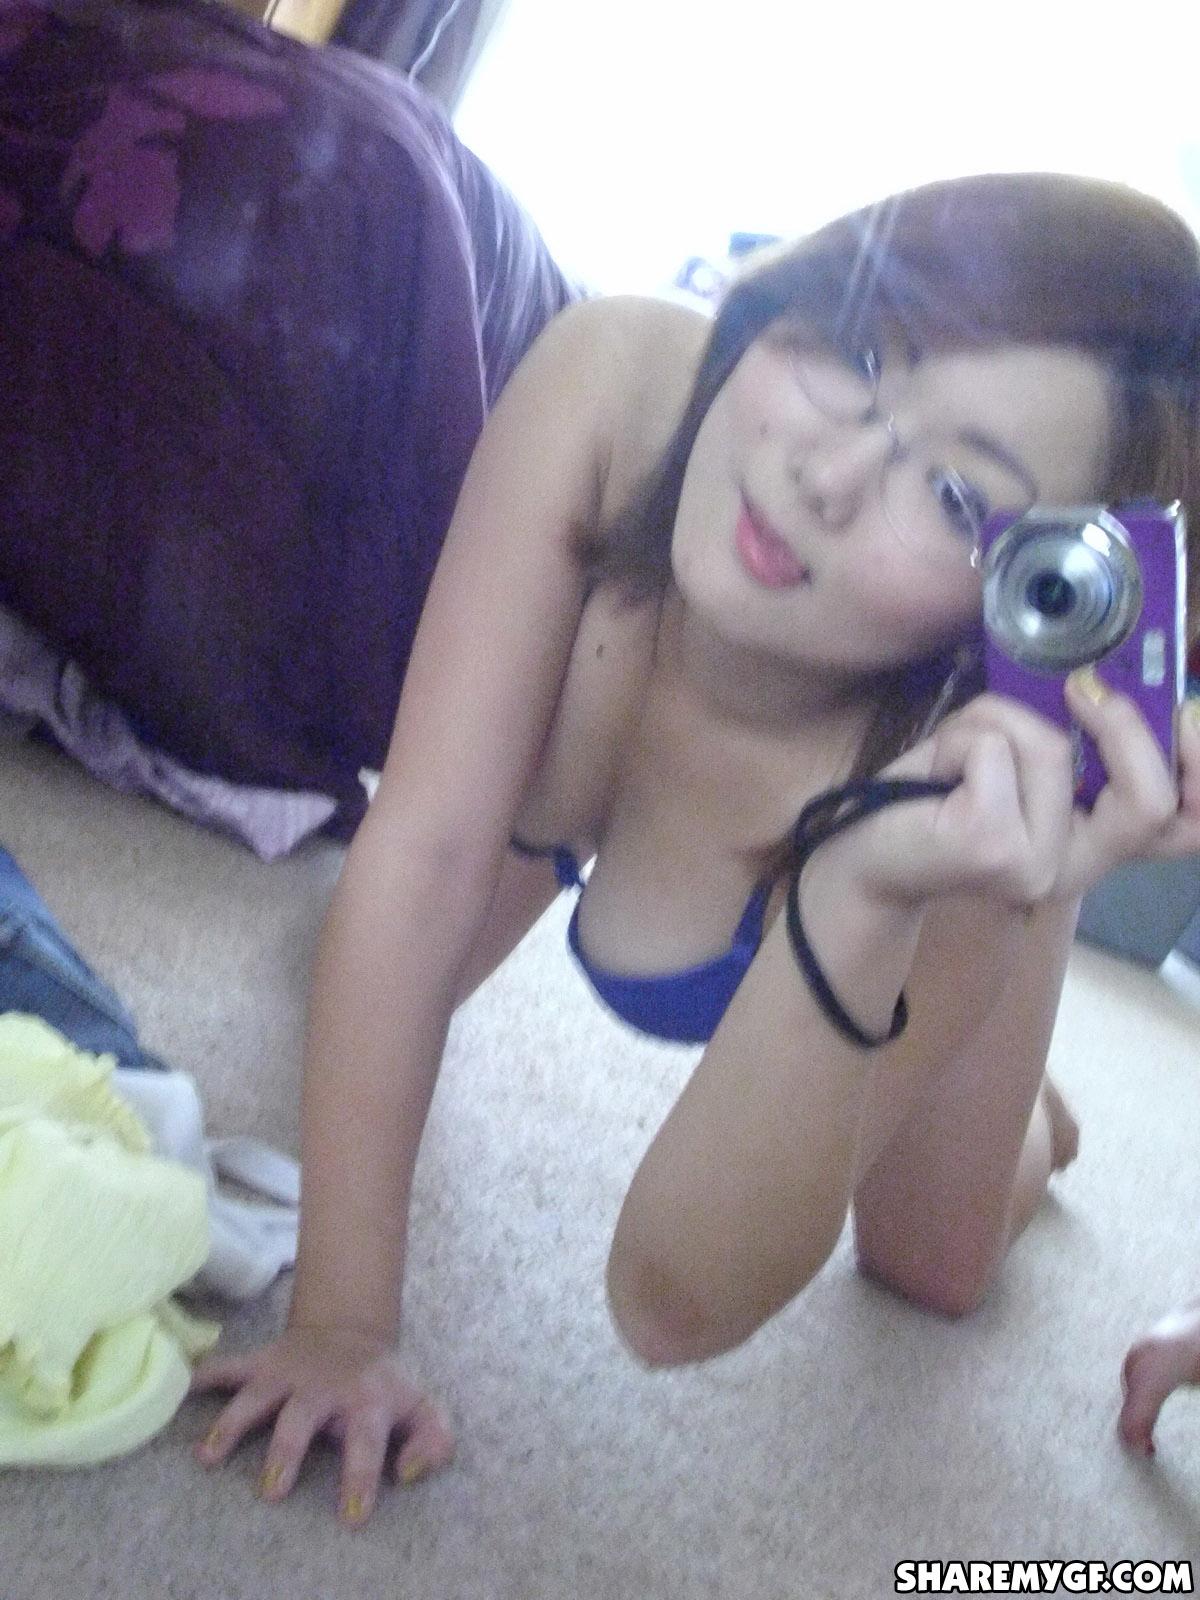 Asian coed shares hot selfies taken in her dorm room #60795853